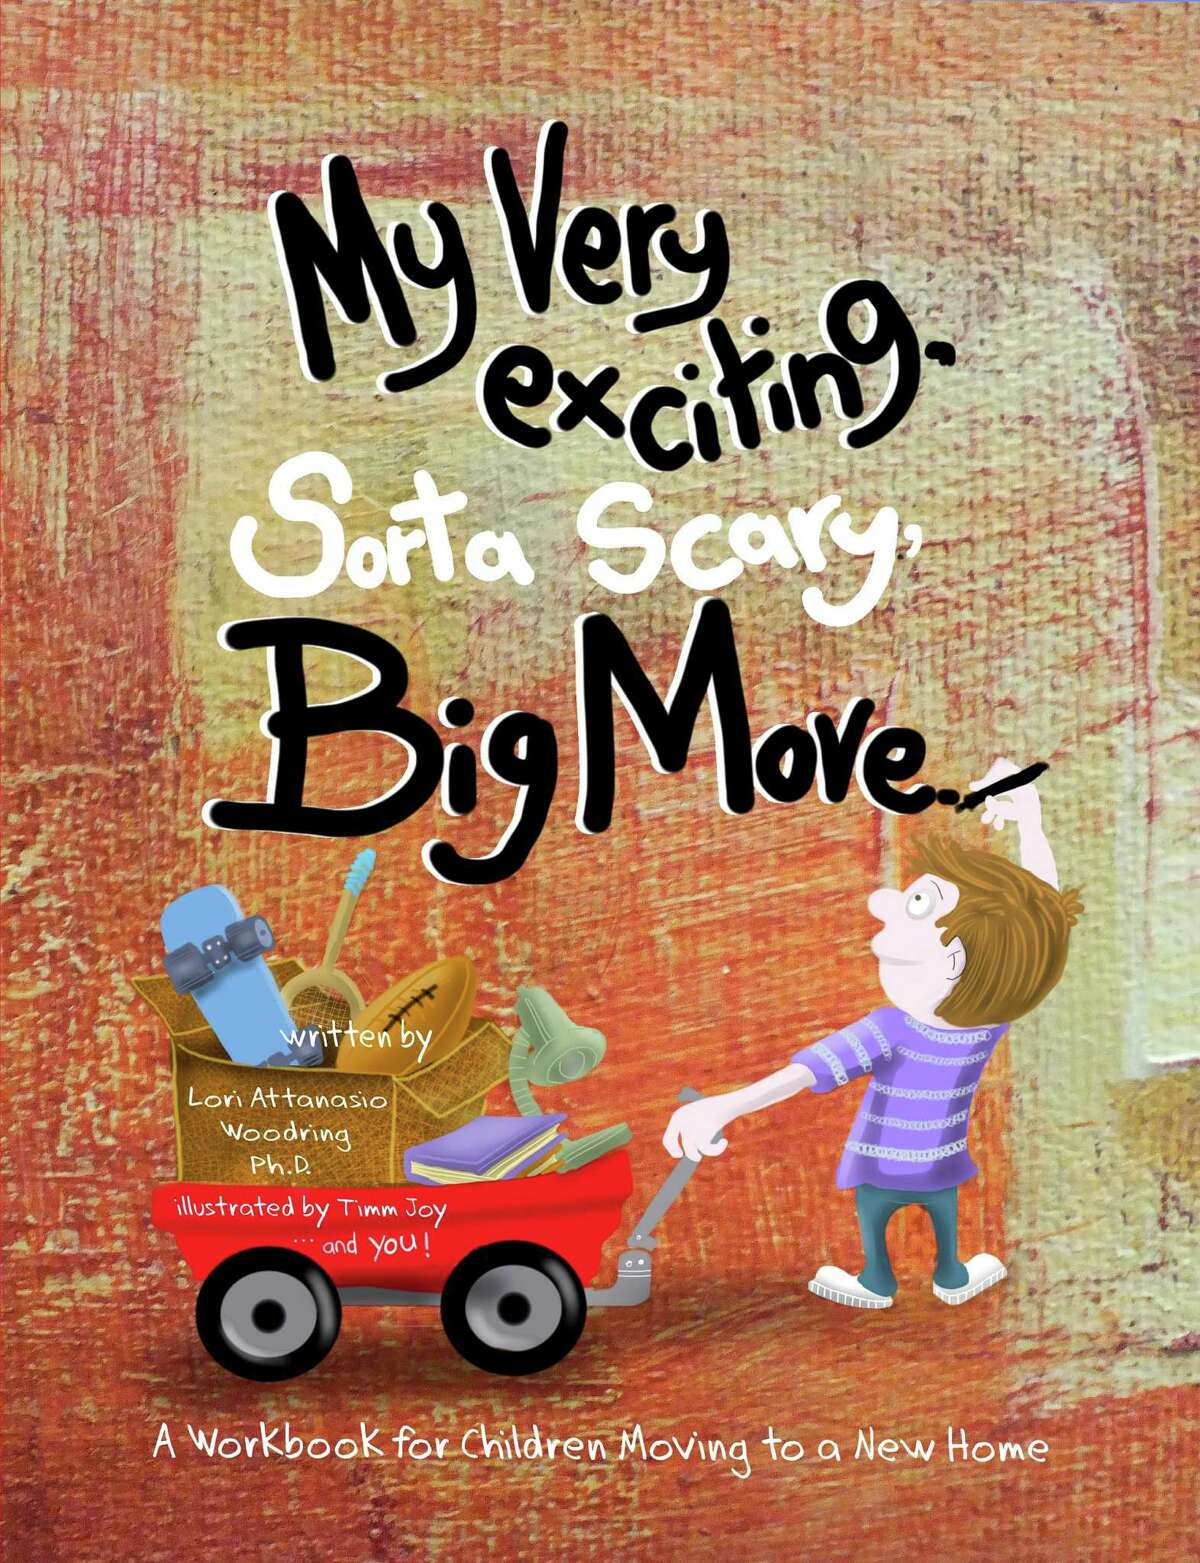 âMy Very Exciting, Sorta Scary, Big Moveâ is a workbook for kids by child psychologist Lori Attanasio Woodring.